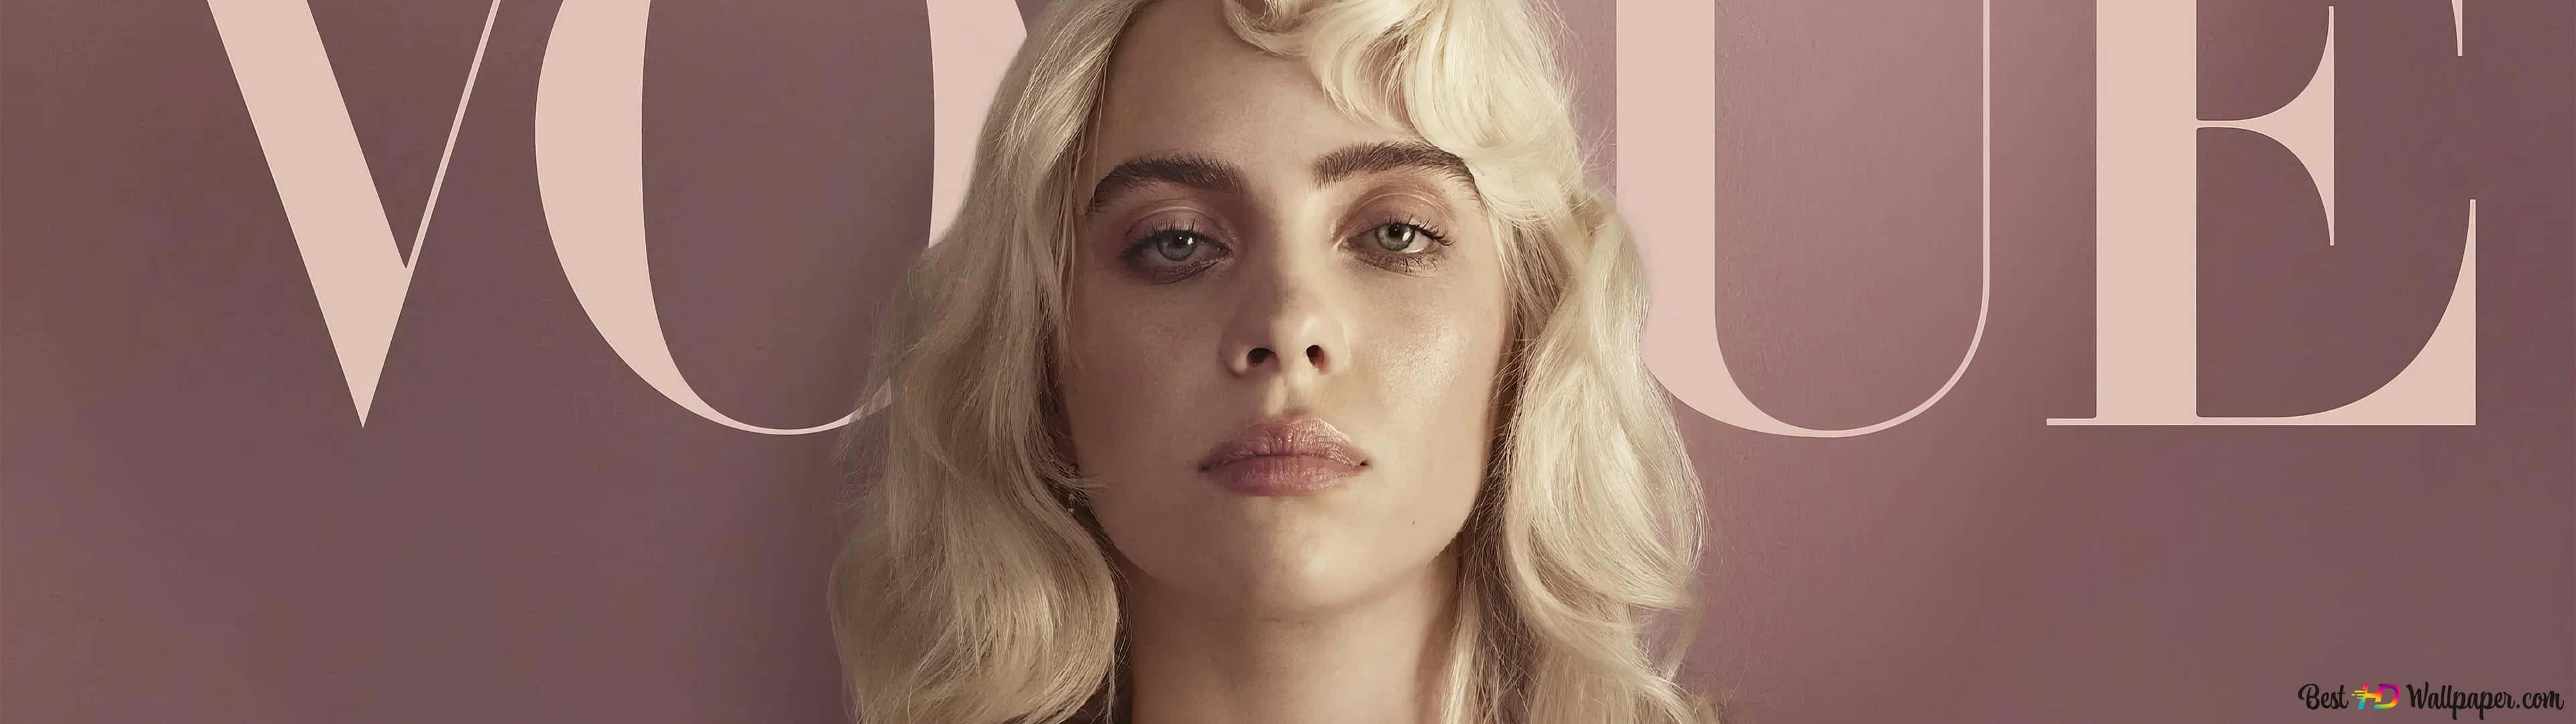 Vogue Billie Eilish 2021 Wallpaper